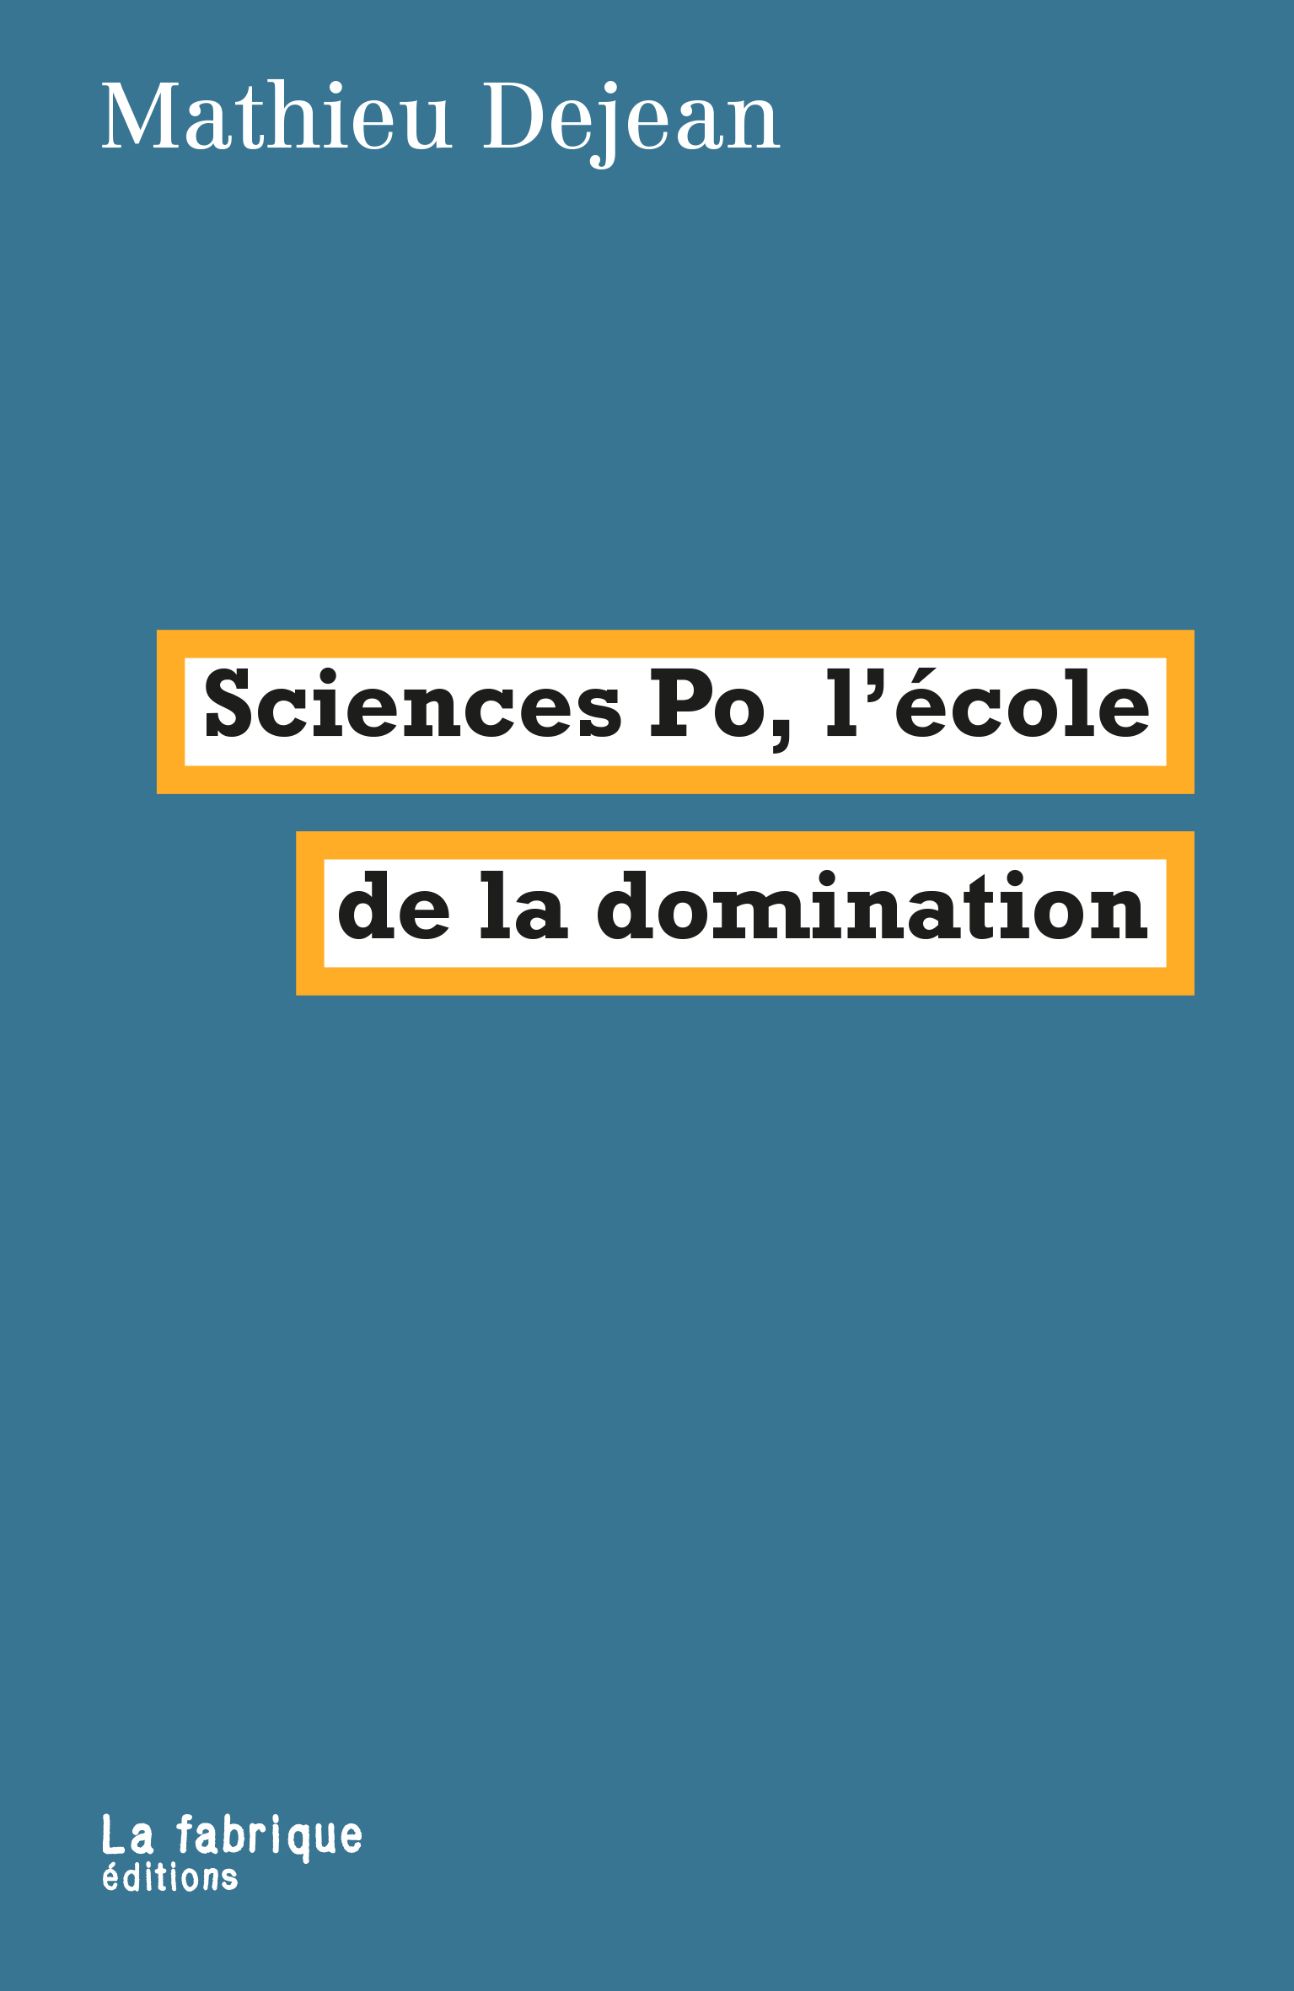 Mathieu Dejean, Sciences po : l'école de la domination